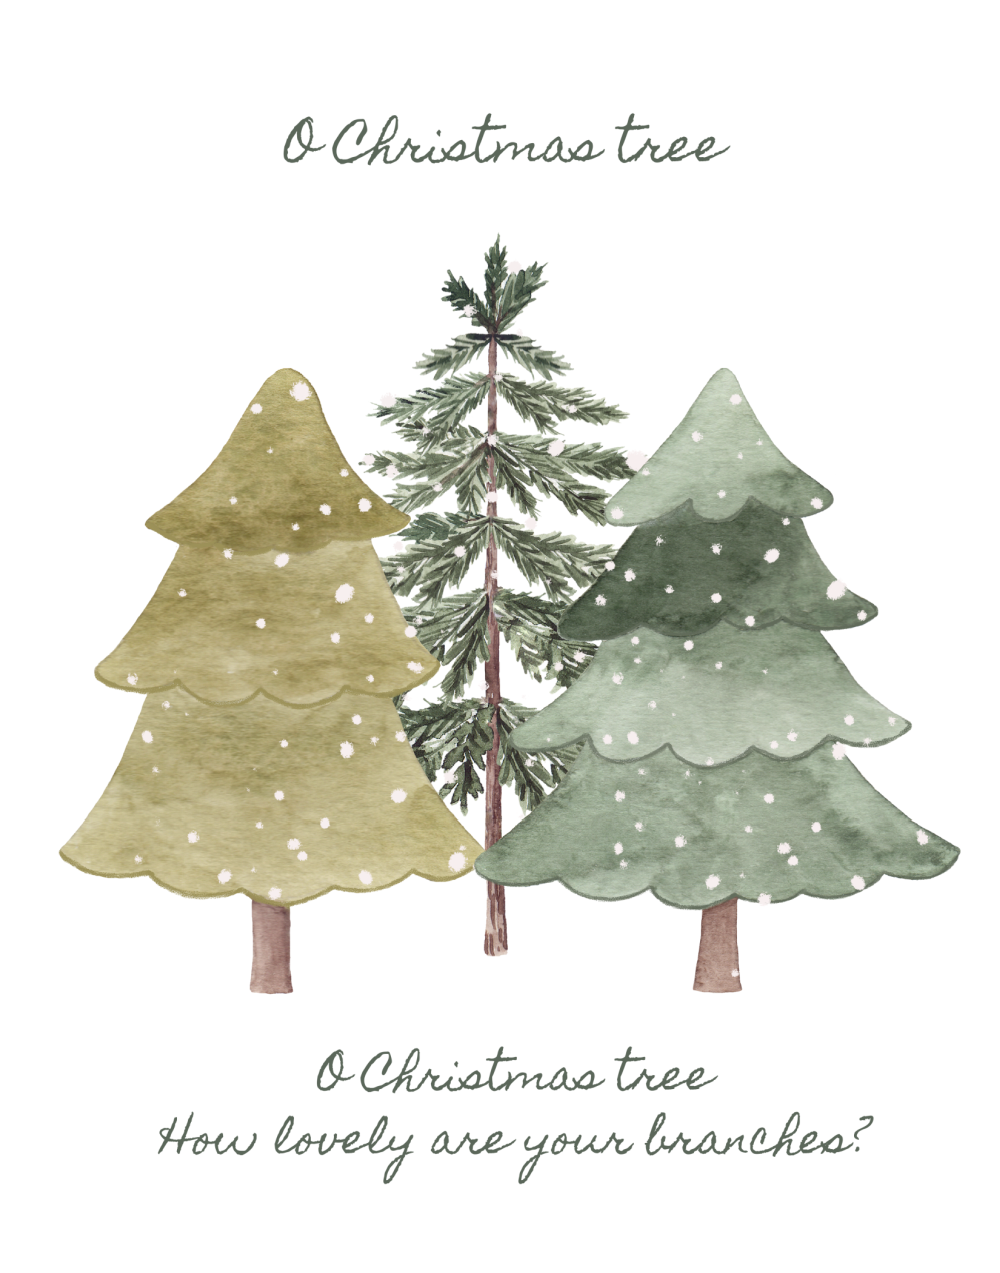 Christmas artwork with three Christmas trees and lyrics from O Christmas Tree.